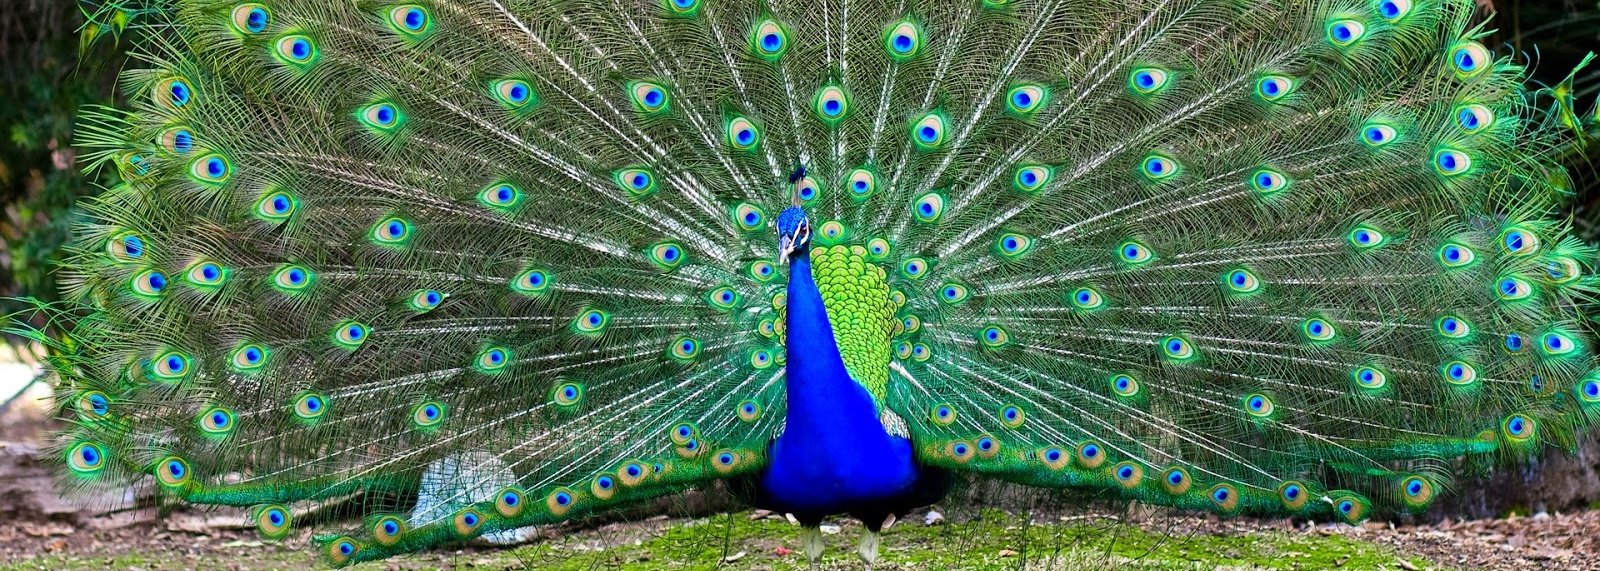 990 Gambar Burung Merak India Terbaik